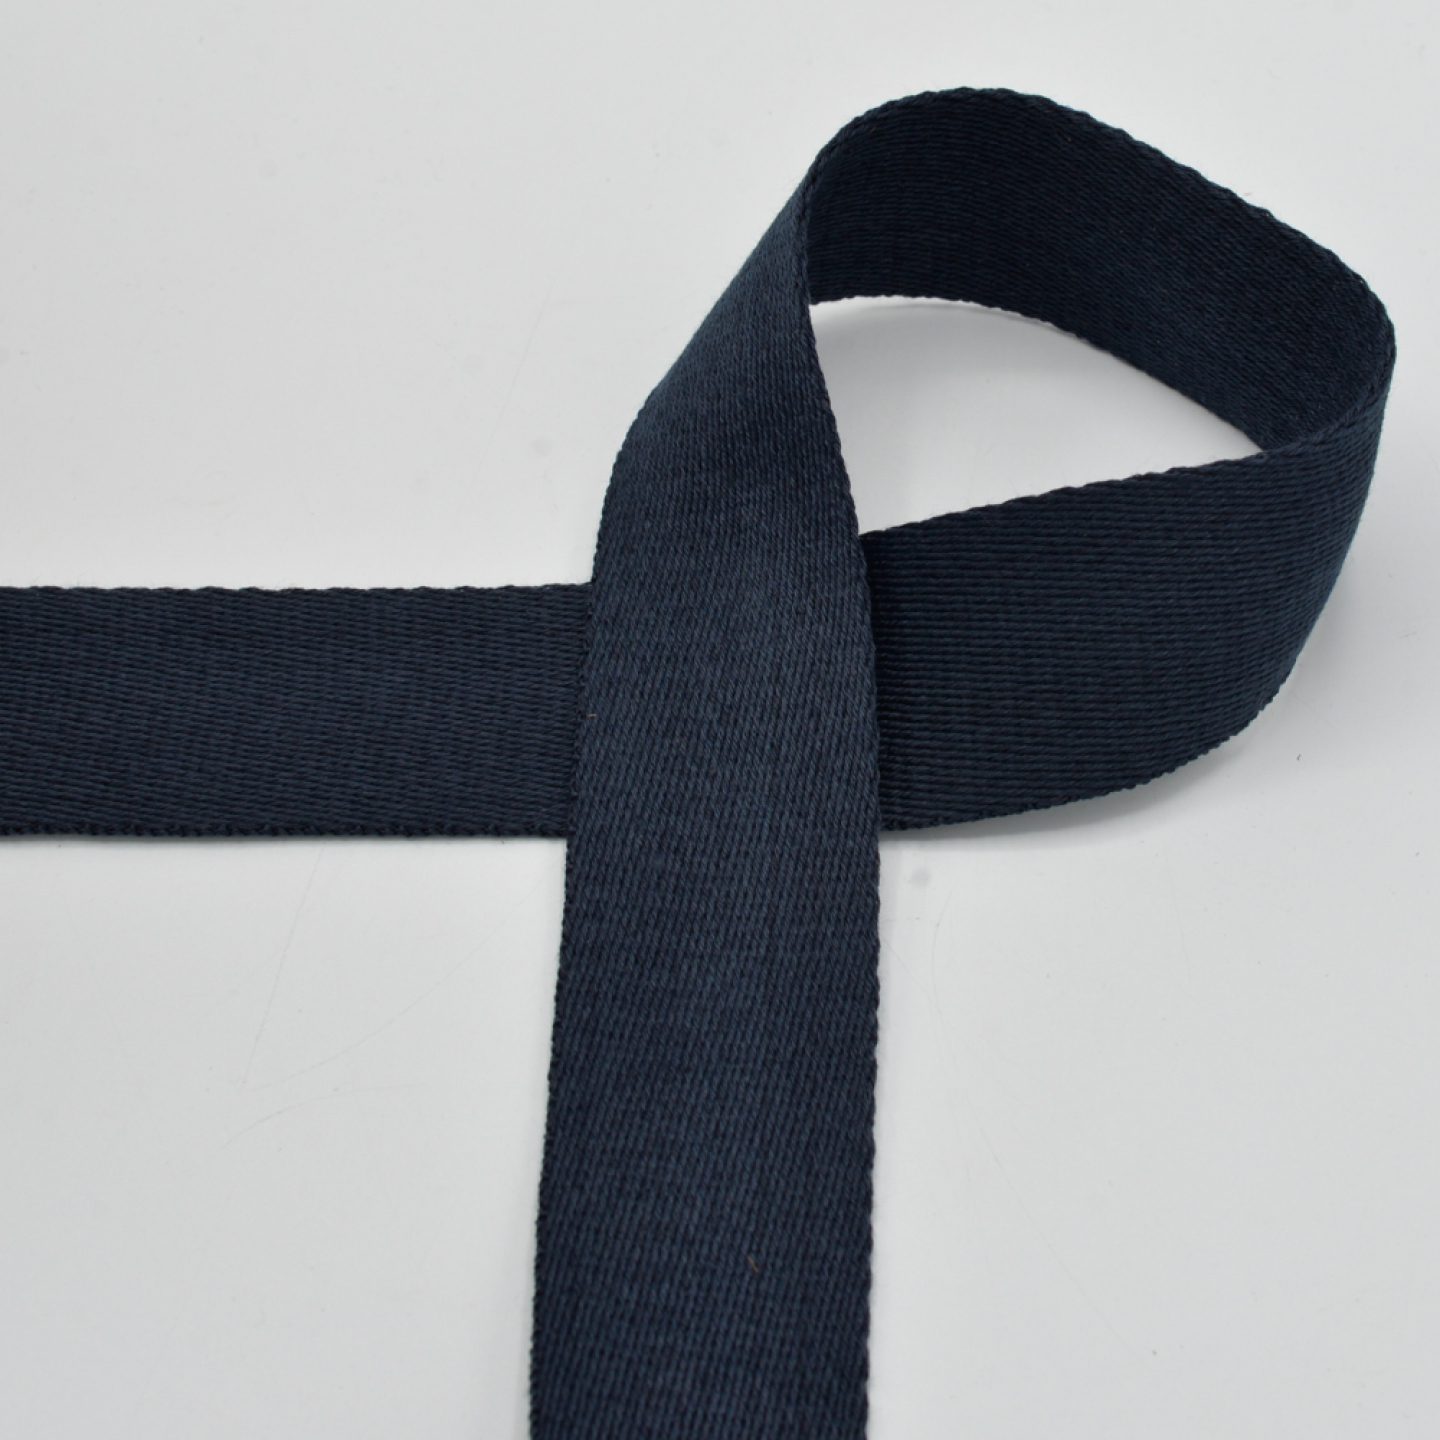 Ruban de sangle de sac à dos en polyester noir, largeur 38 mm